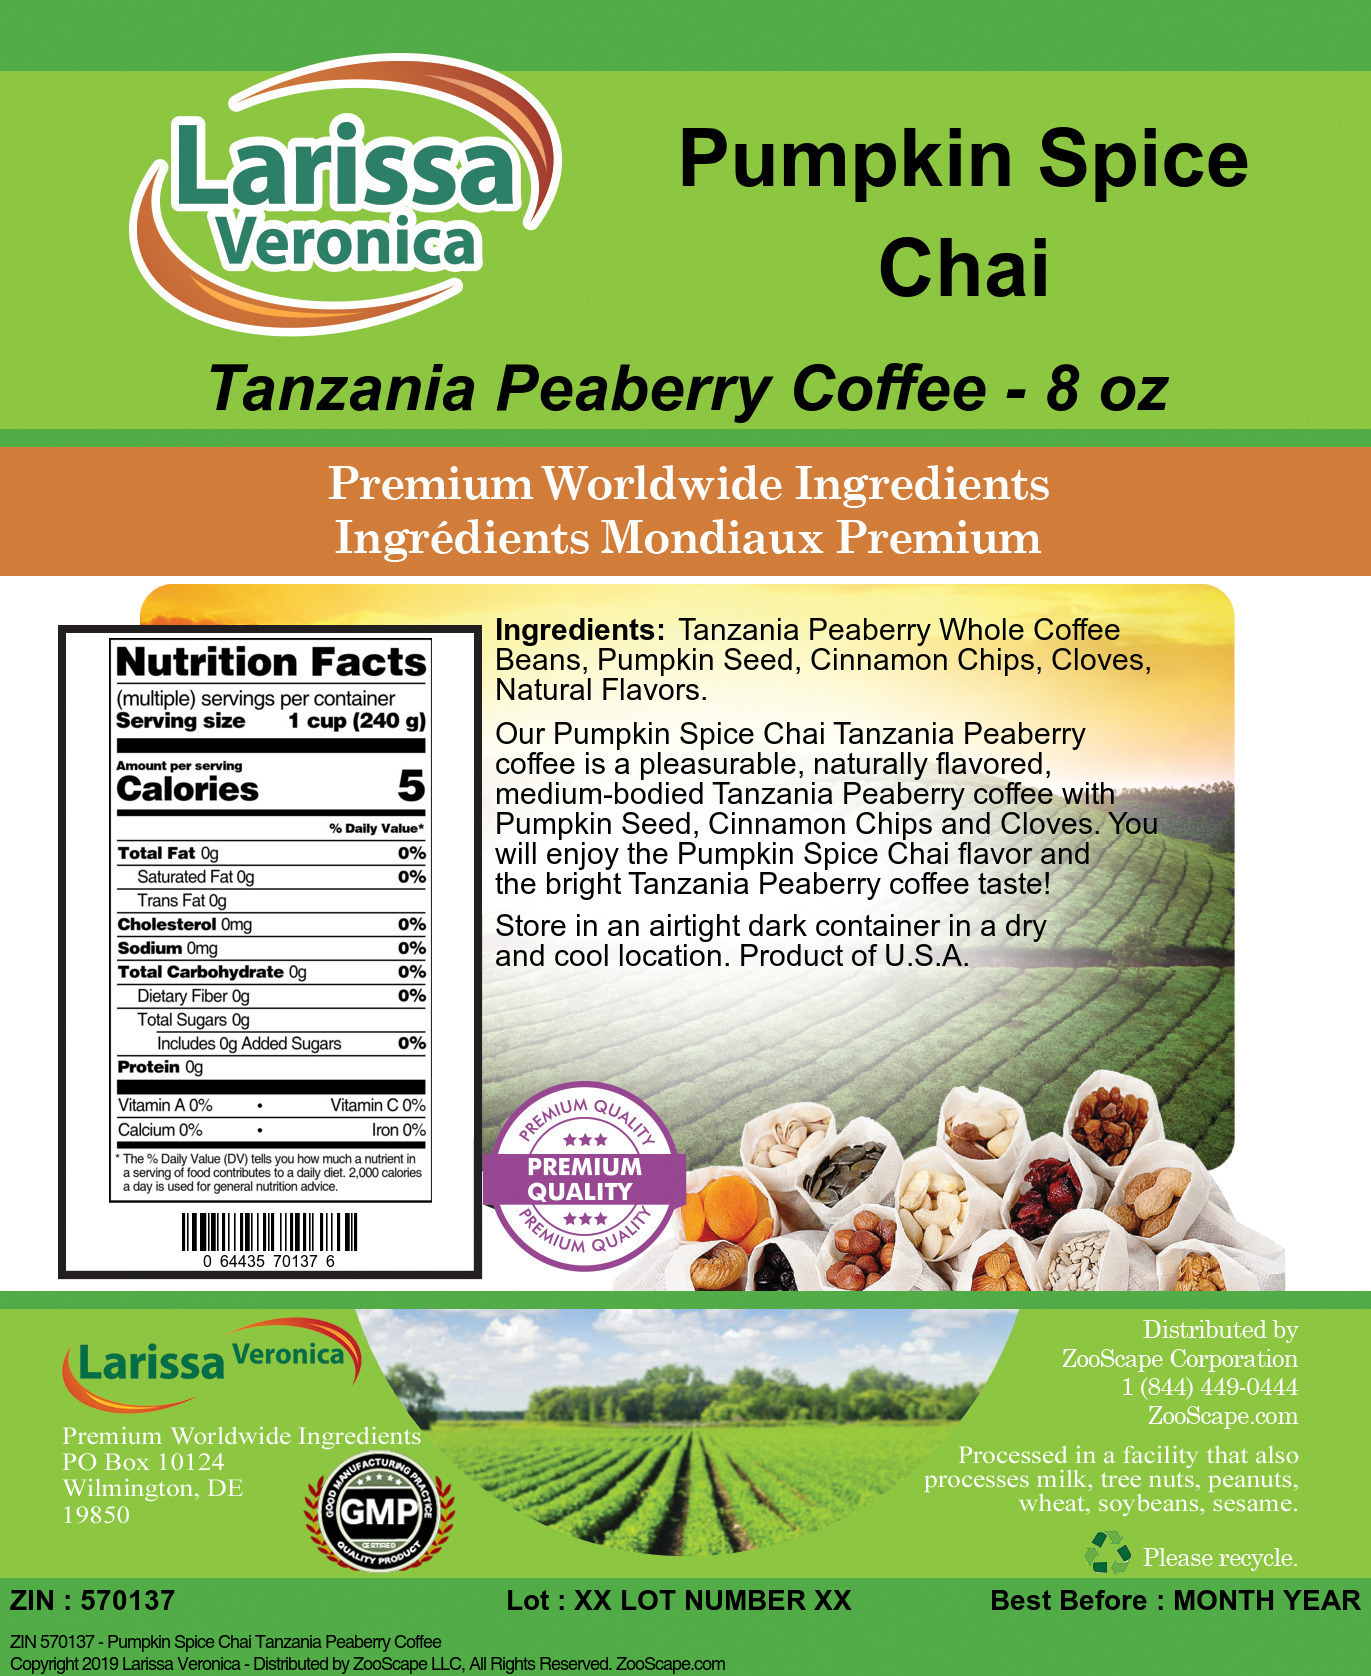 Pumpkin Spice Chai Tanzania Peaberry Coffee - Label